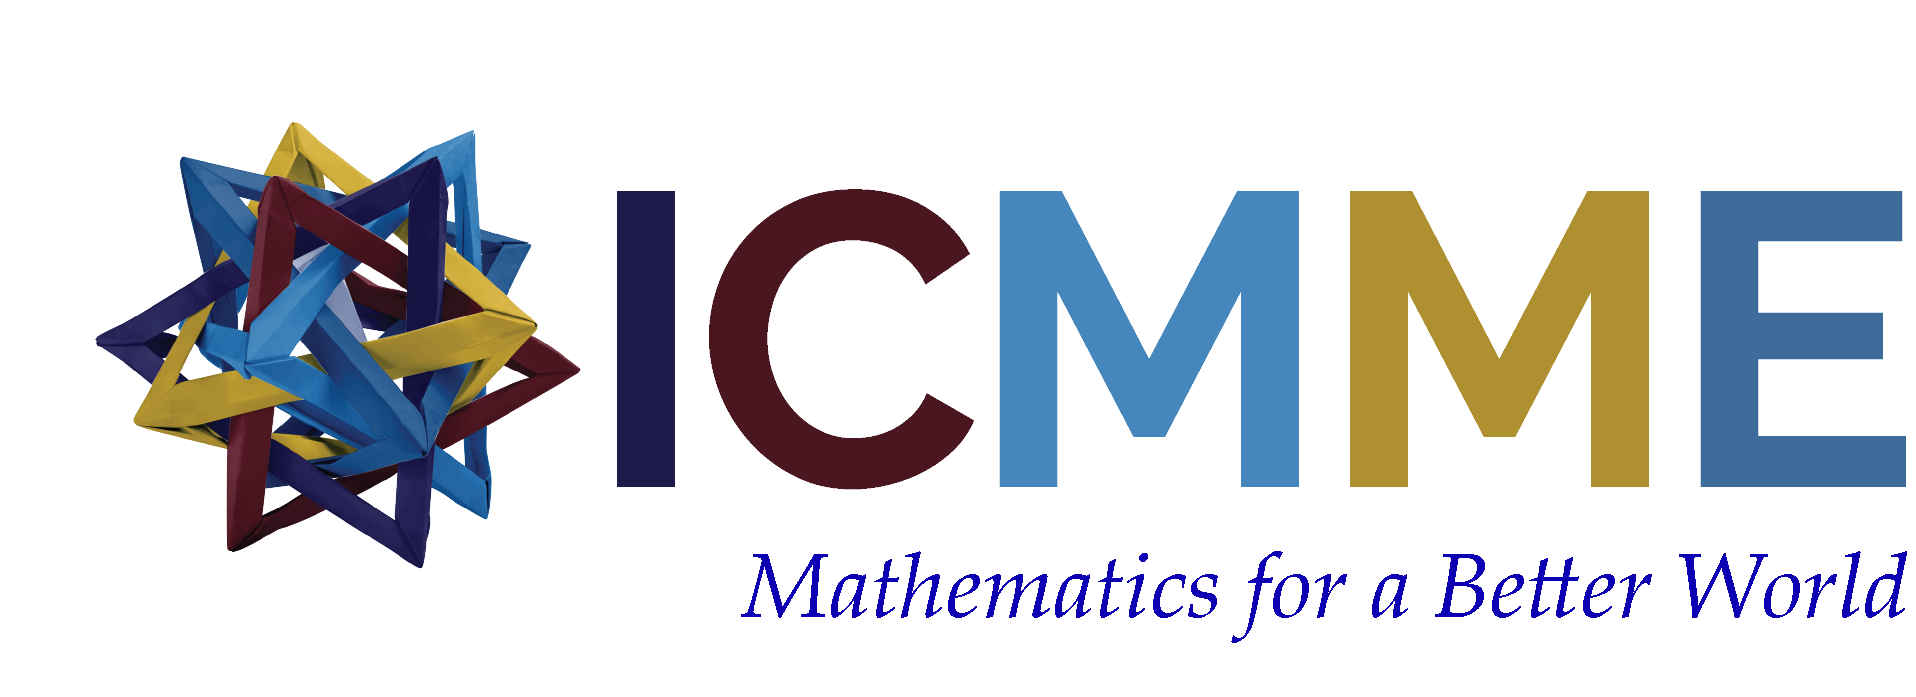 ICMME Logo